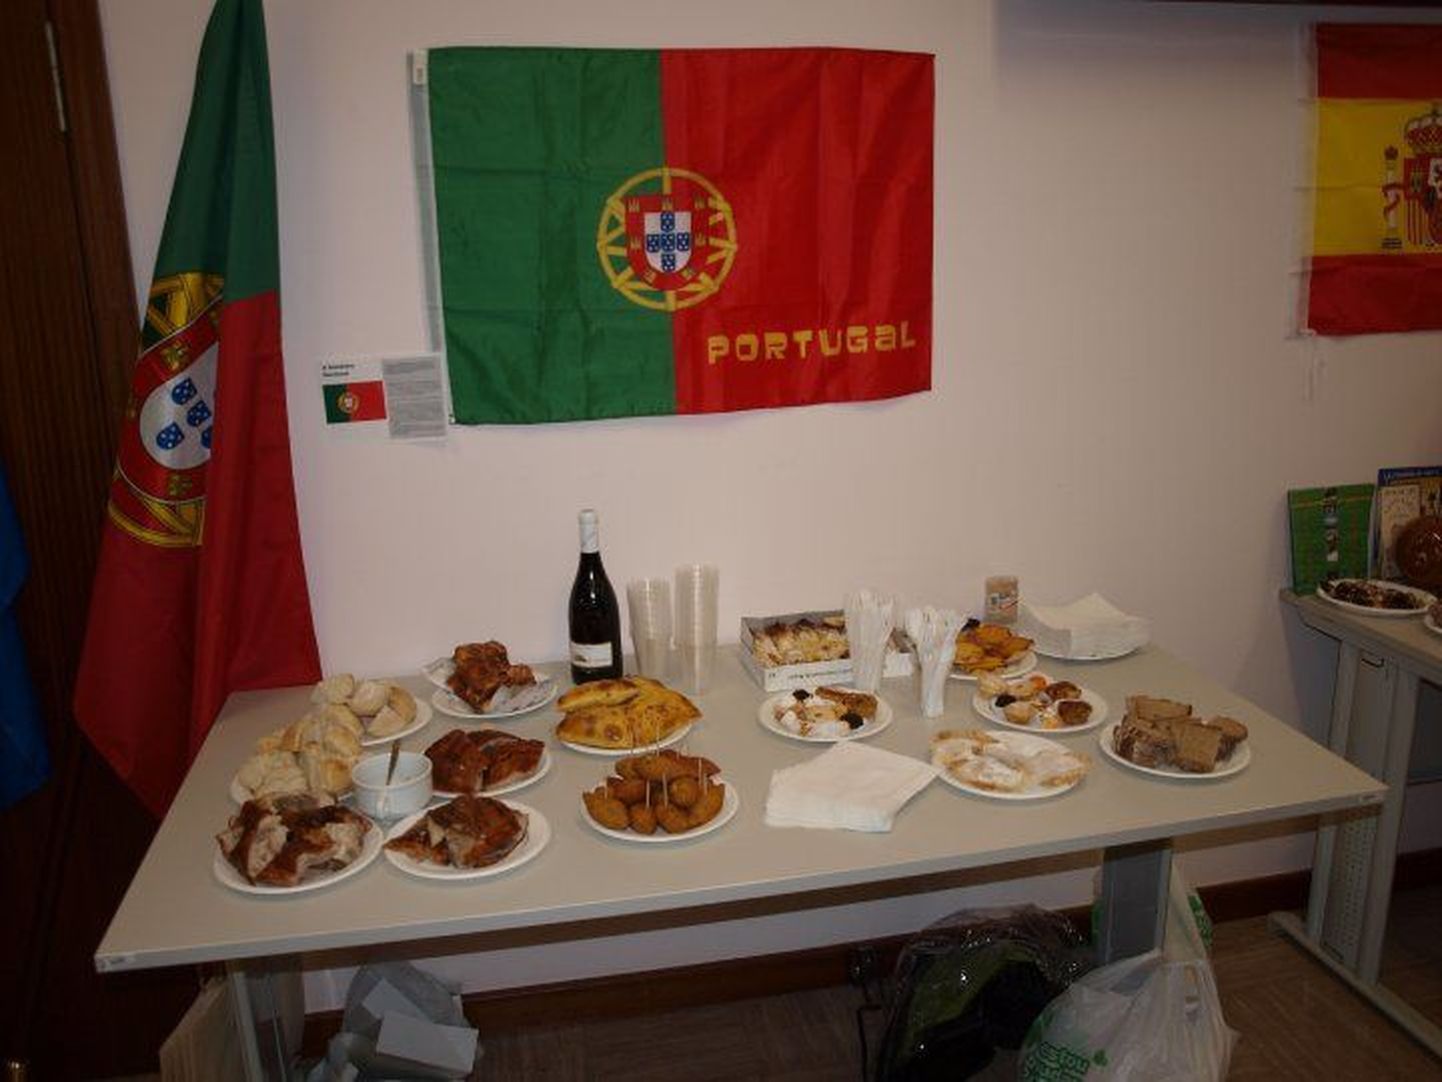 Pärnu täiskasvanute gümnaasiumi neli esindajat käis Portugalis projektitööd tegemas.